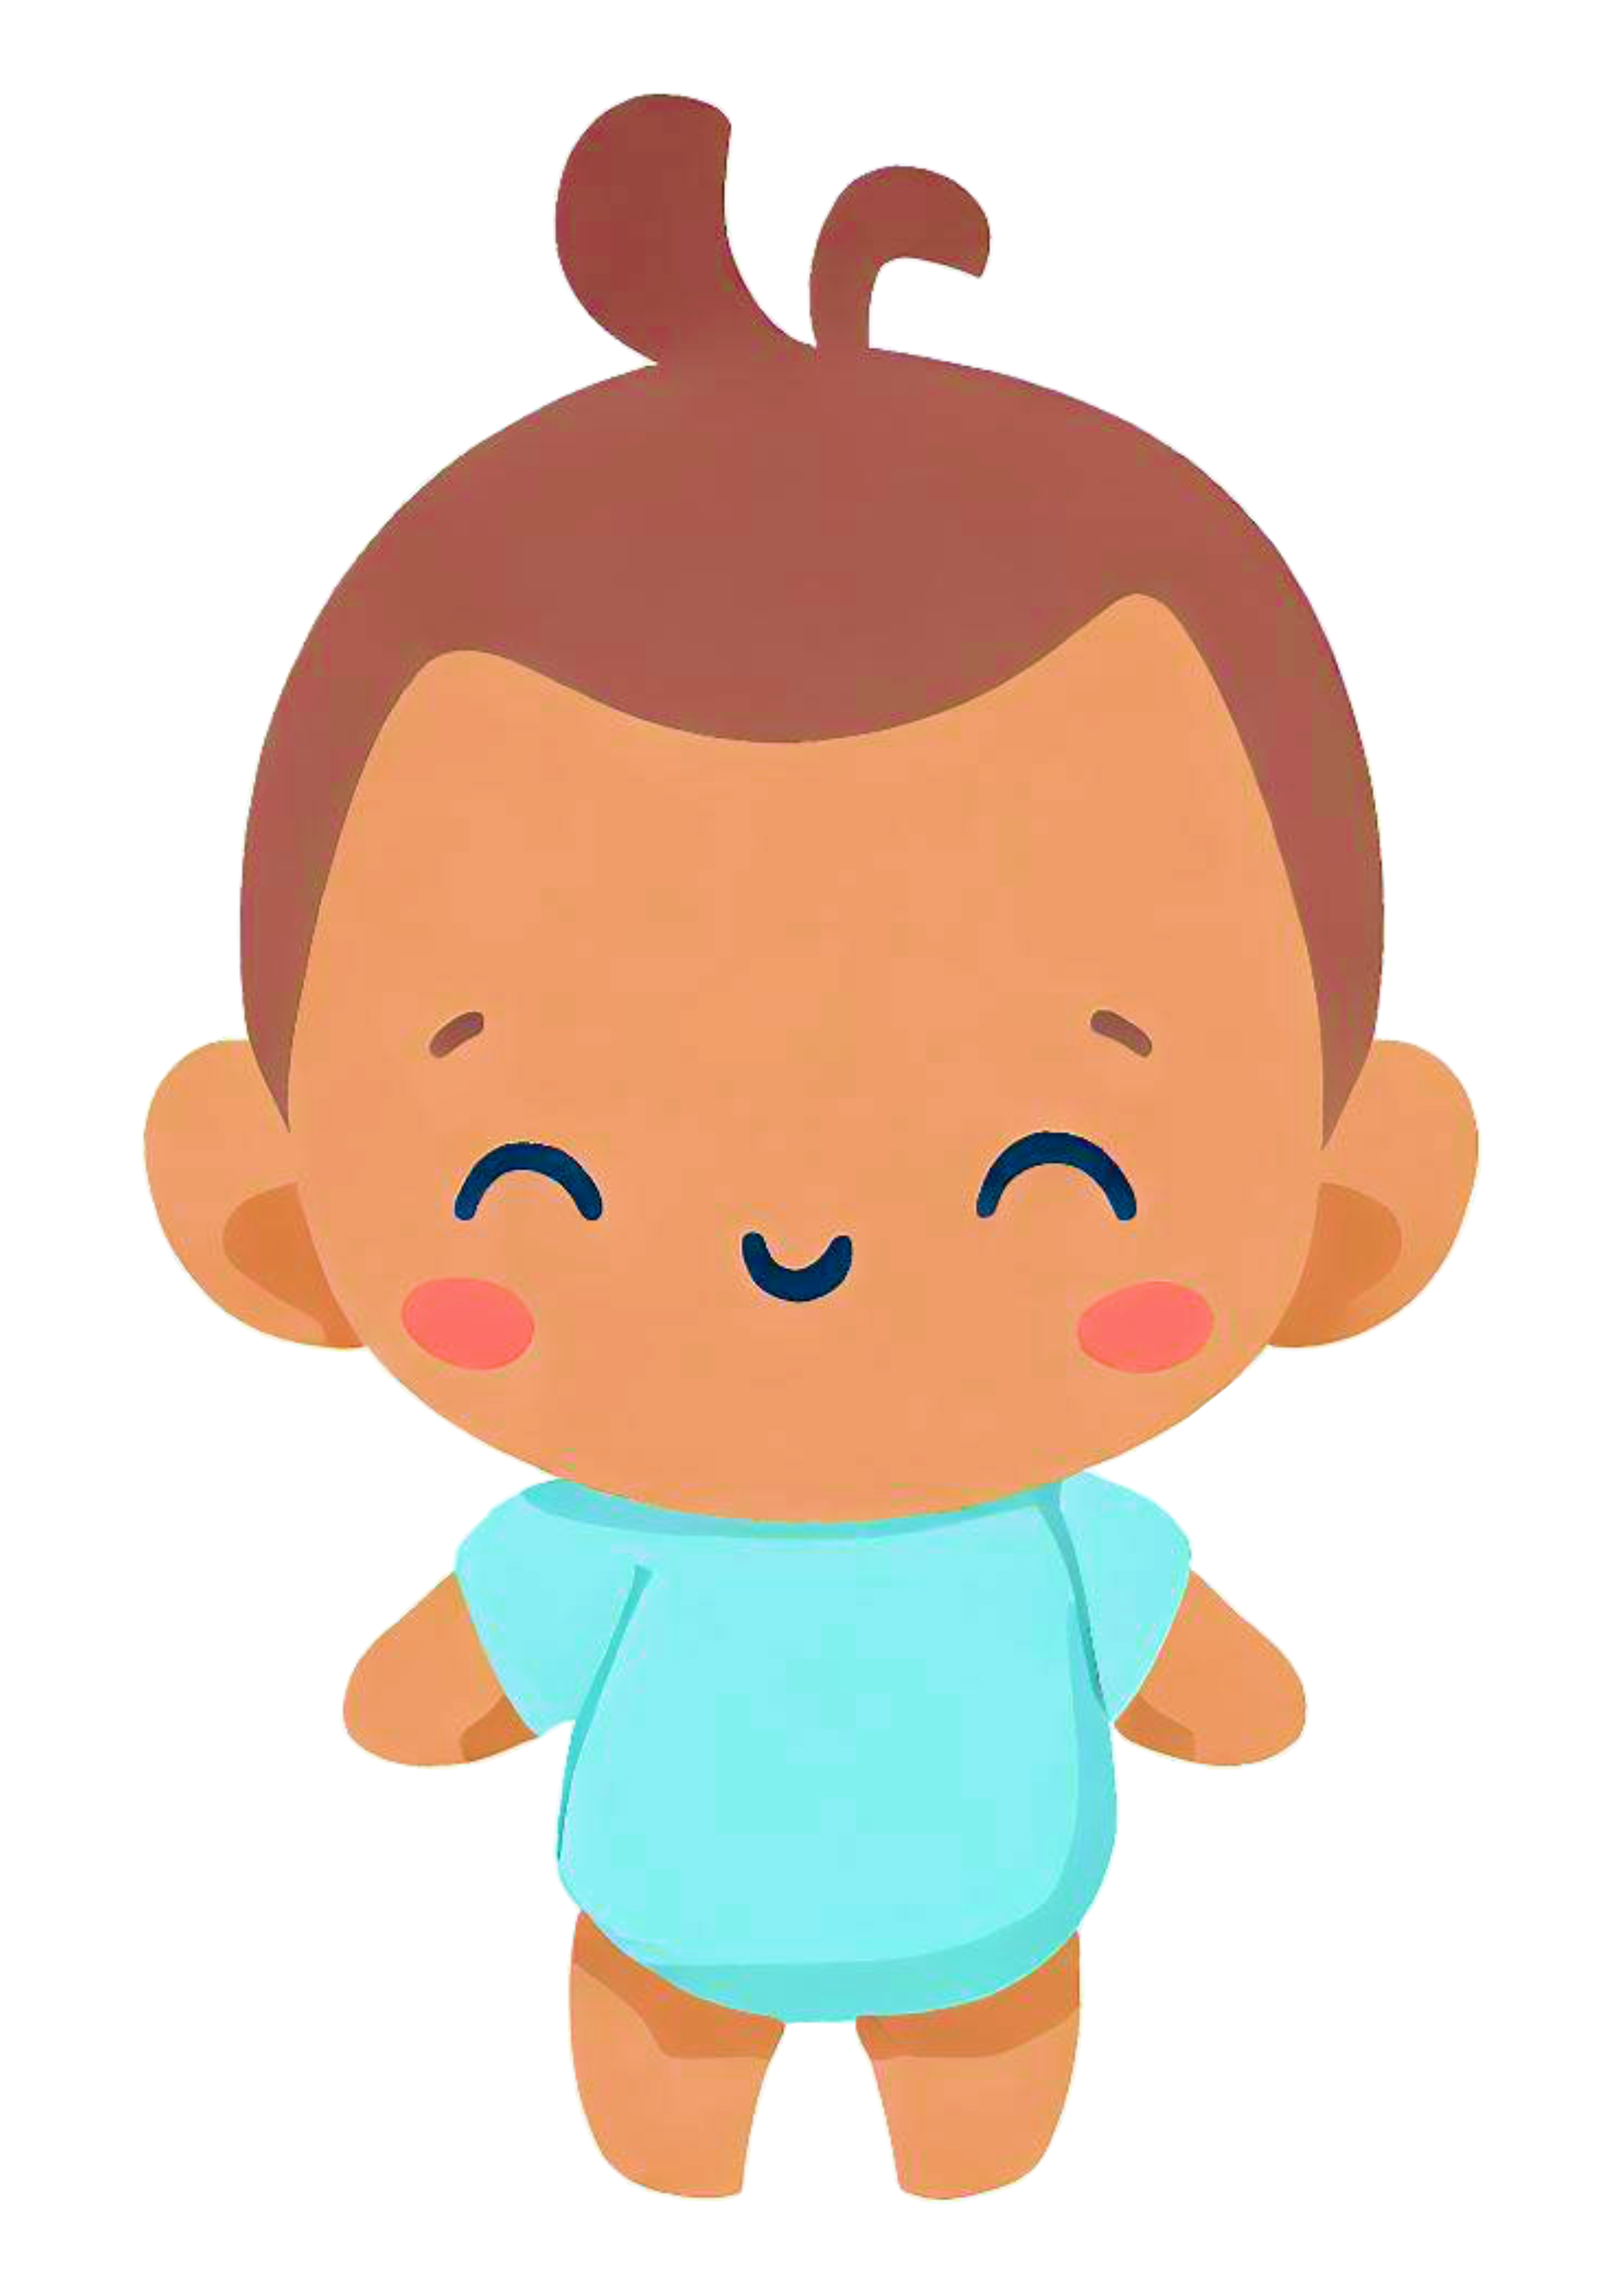 Bebê fofinho cute baby chá de fralda menino moreninho roupinha azul ilustração png